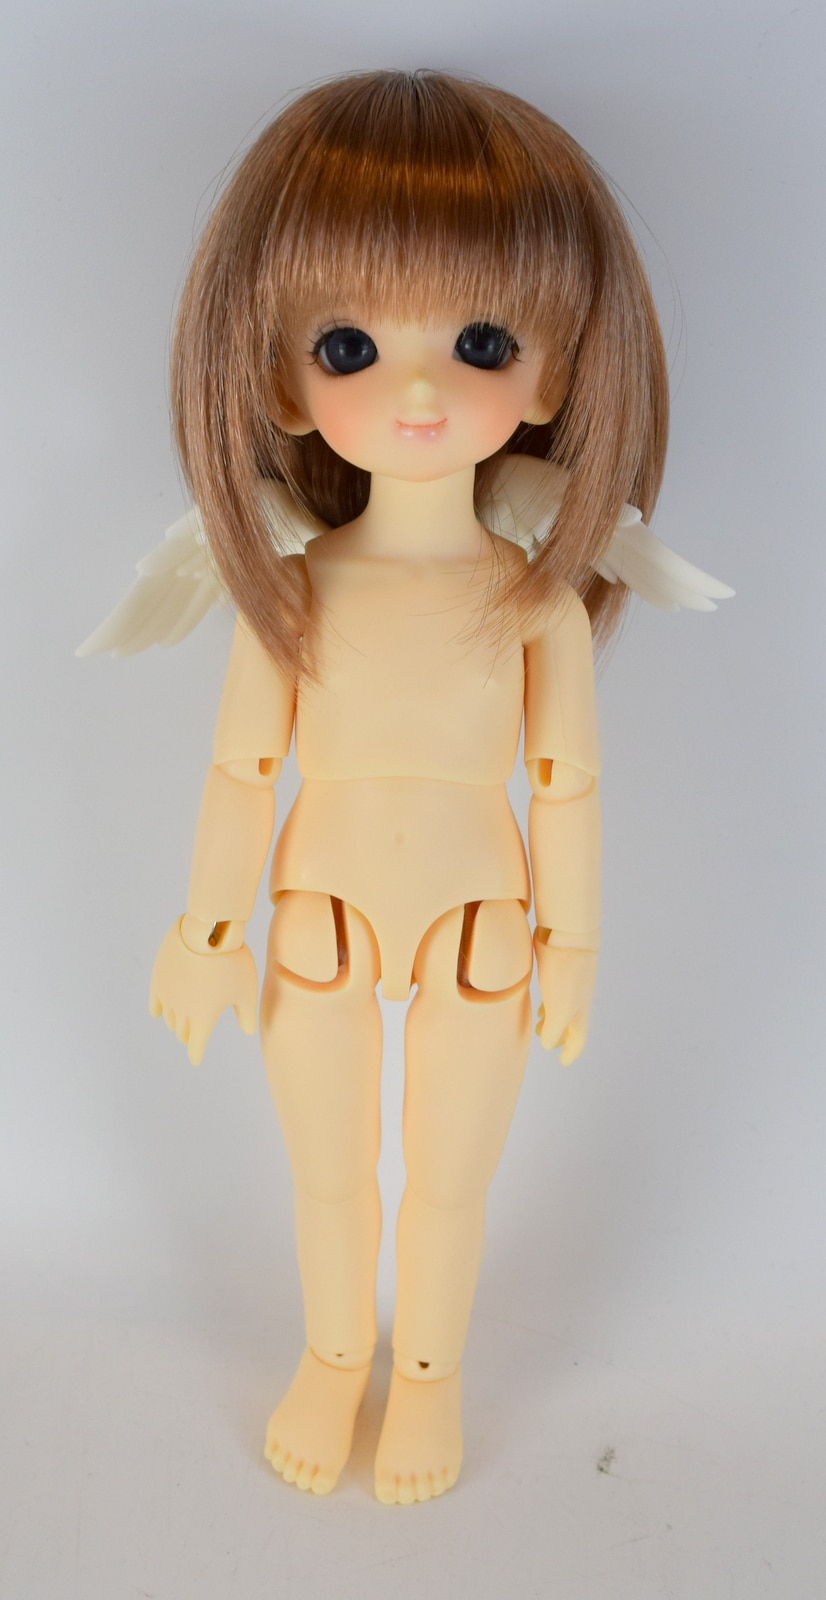 ボークス製 幼天使 八代 天使の里限定 1st - 趣味/おもちゃ